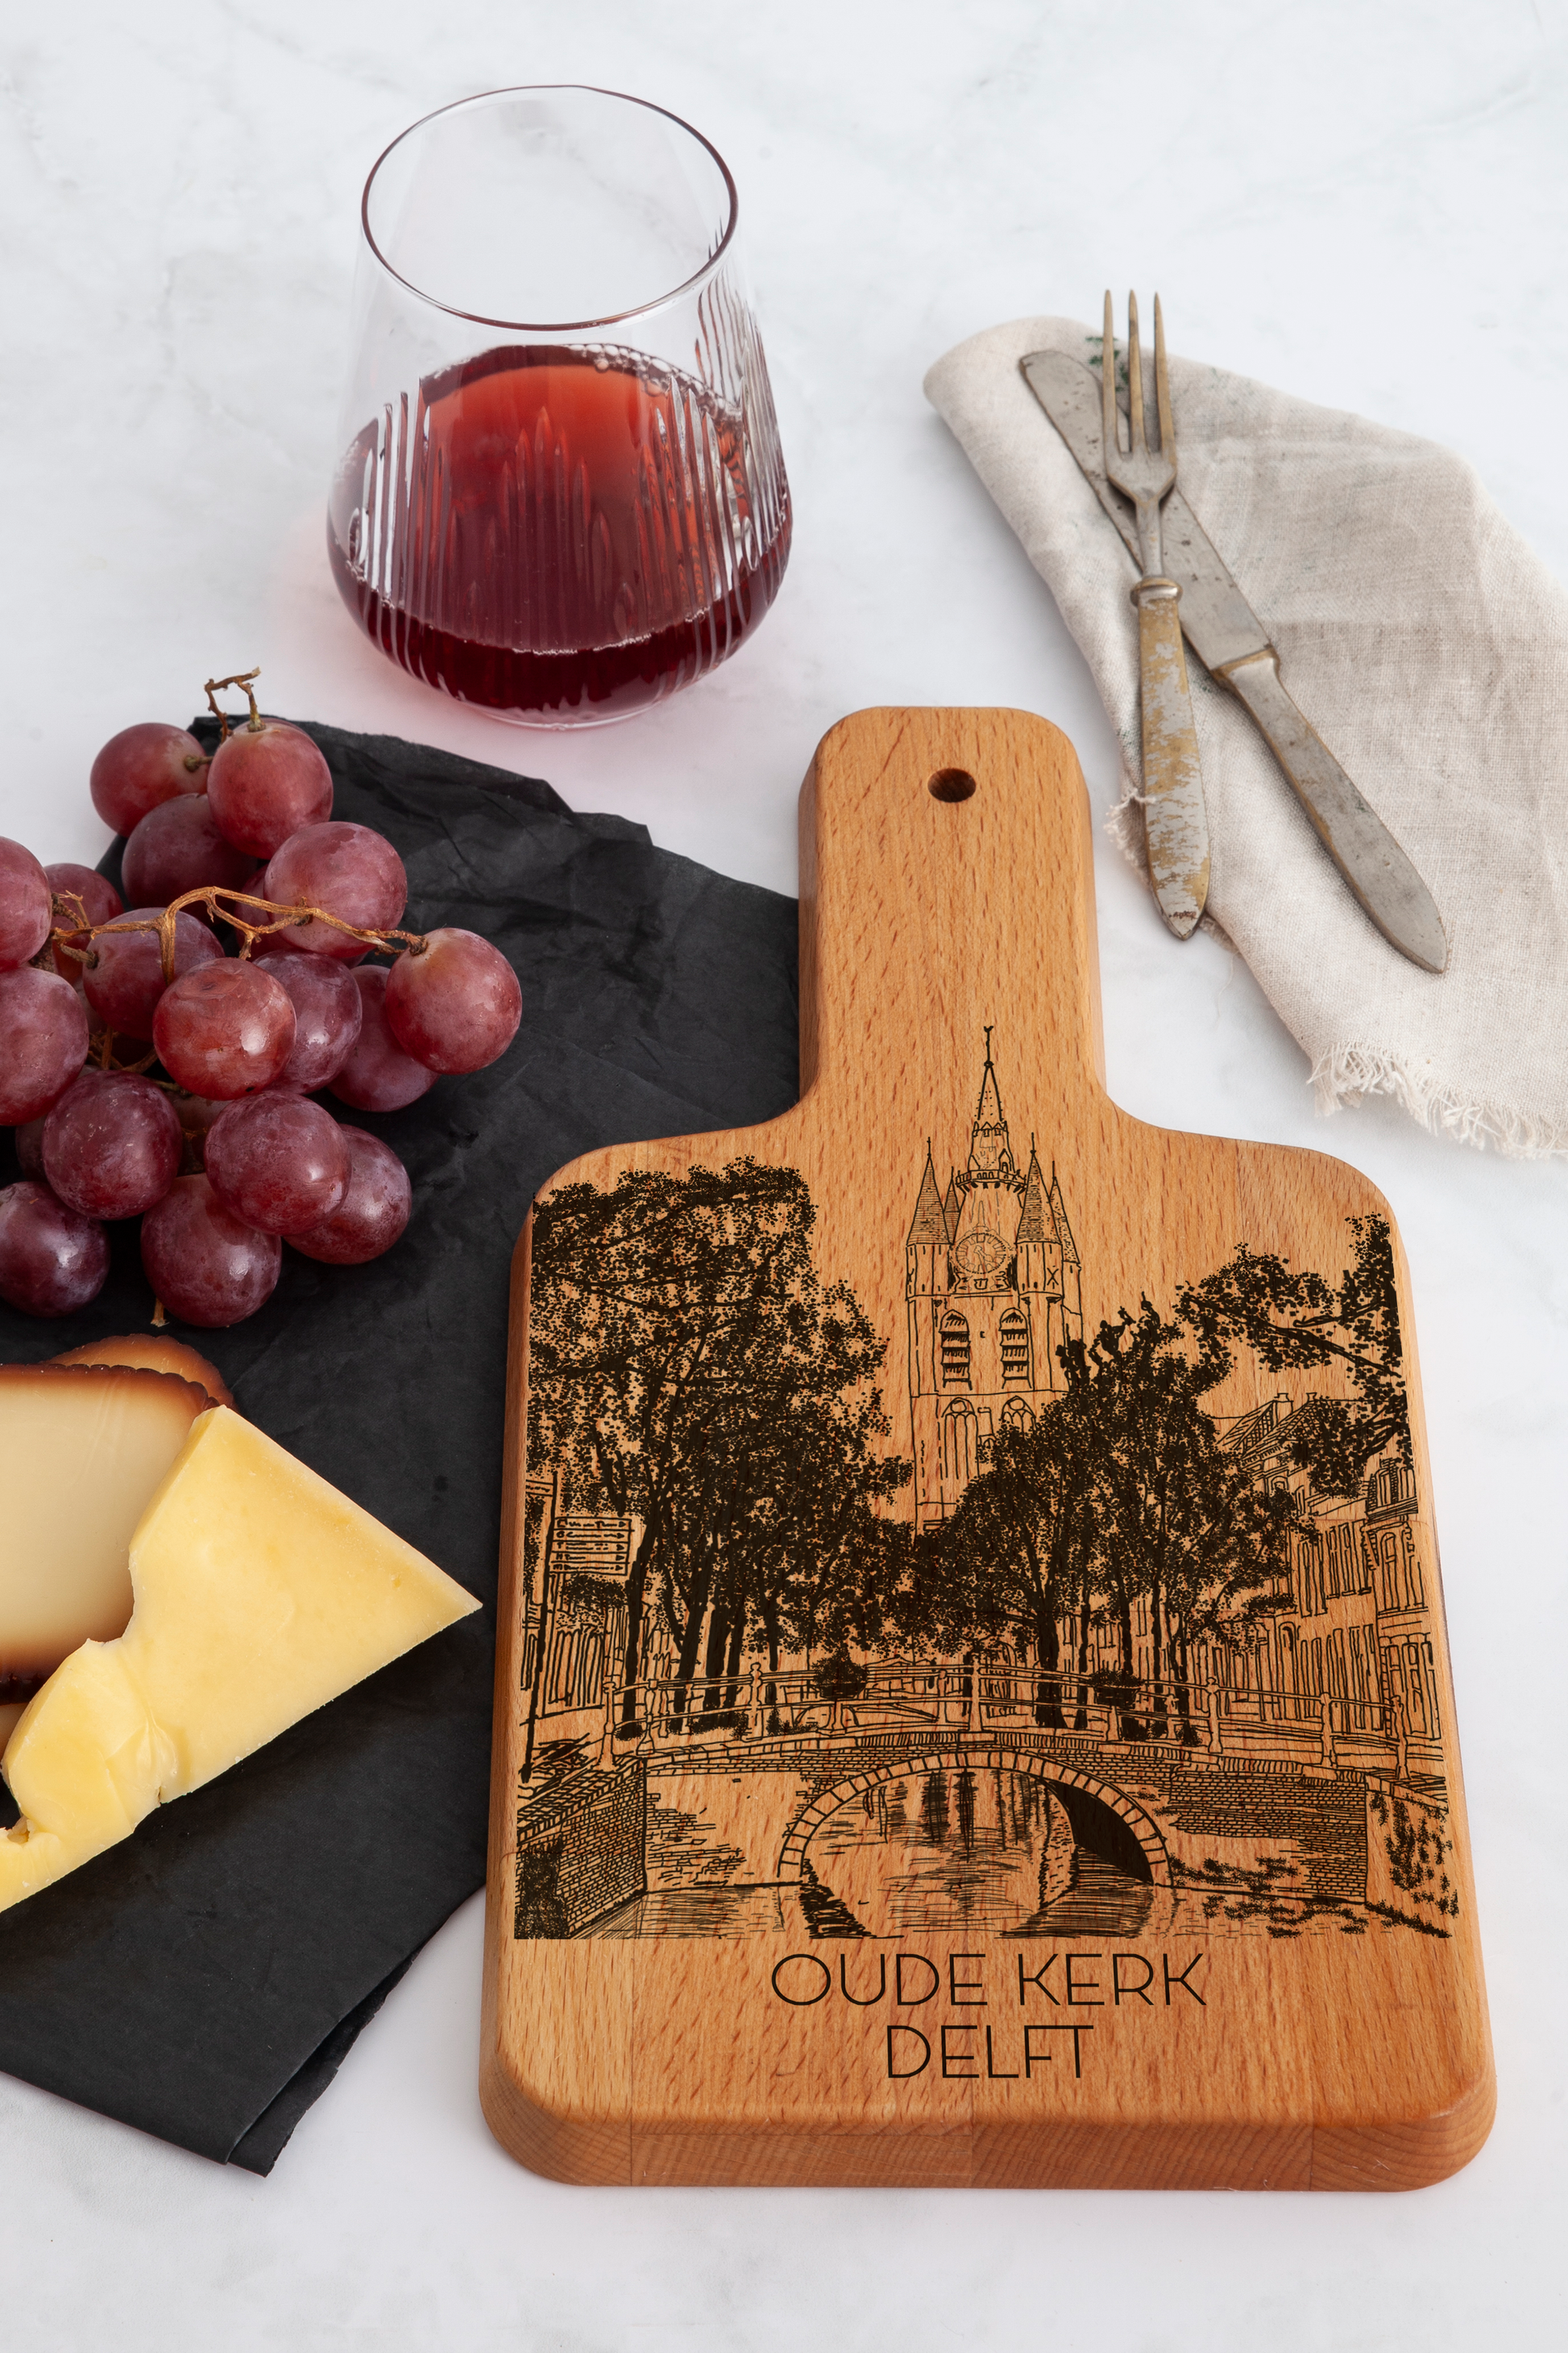 Delft, Oude Kerk, cheese board, side